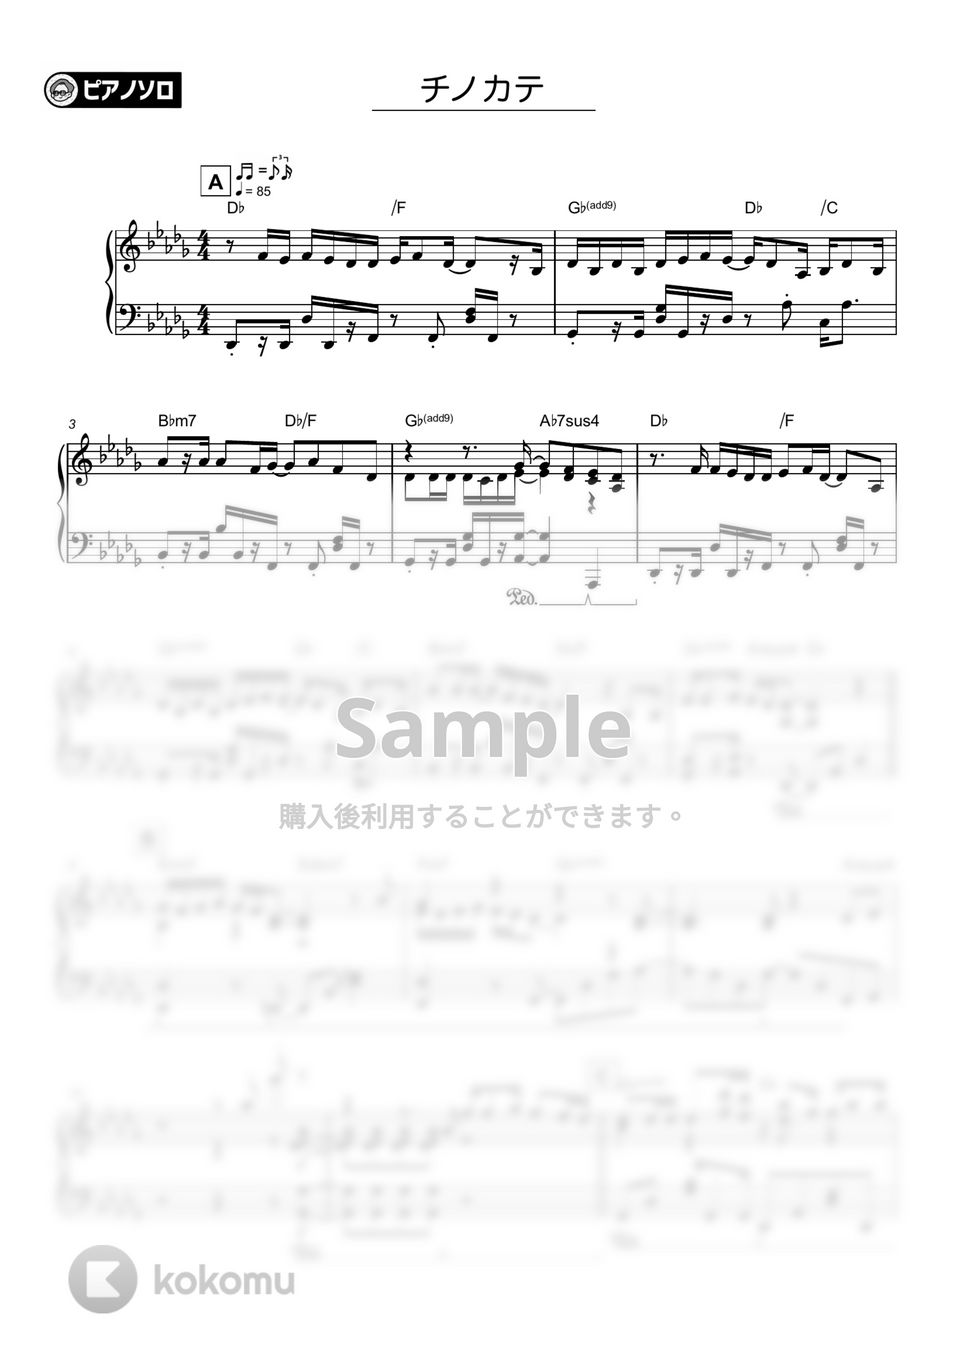 ヨルシカ - チノカテ by シータピアノ